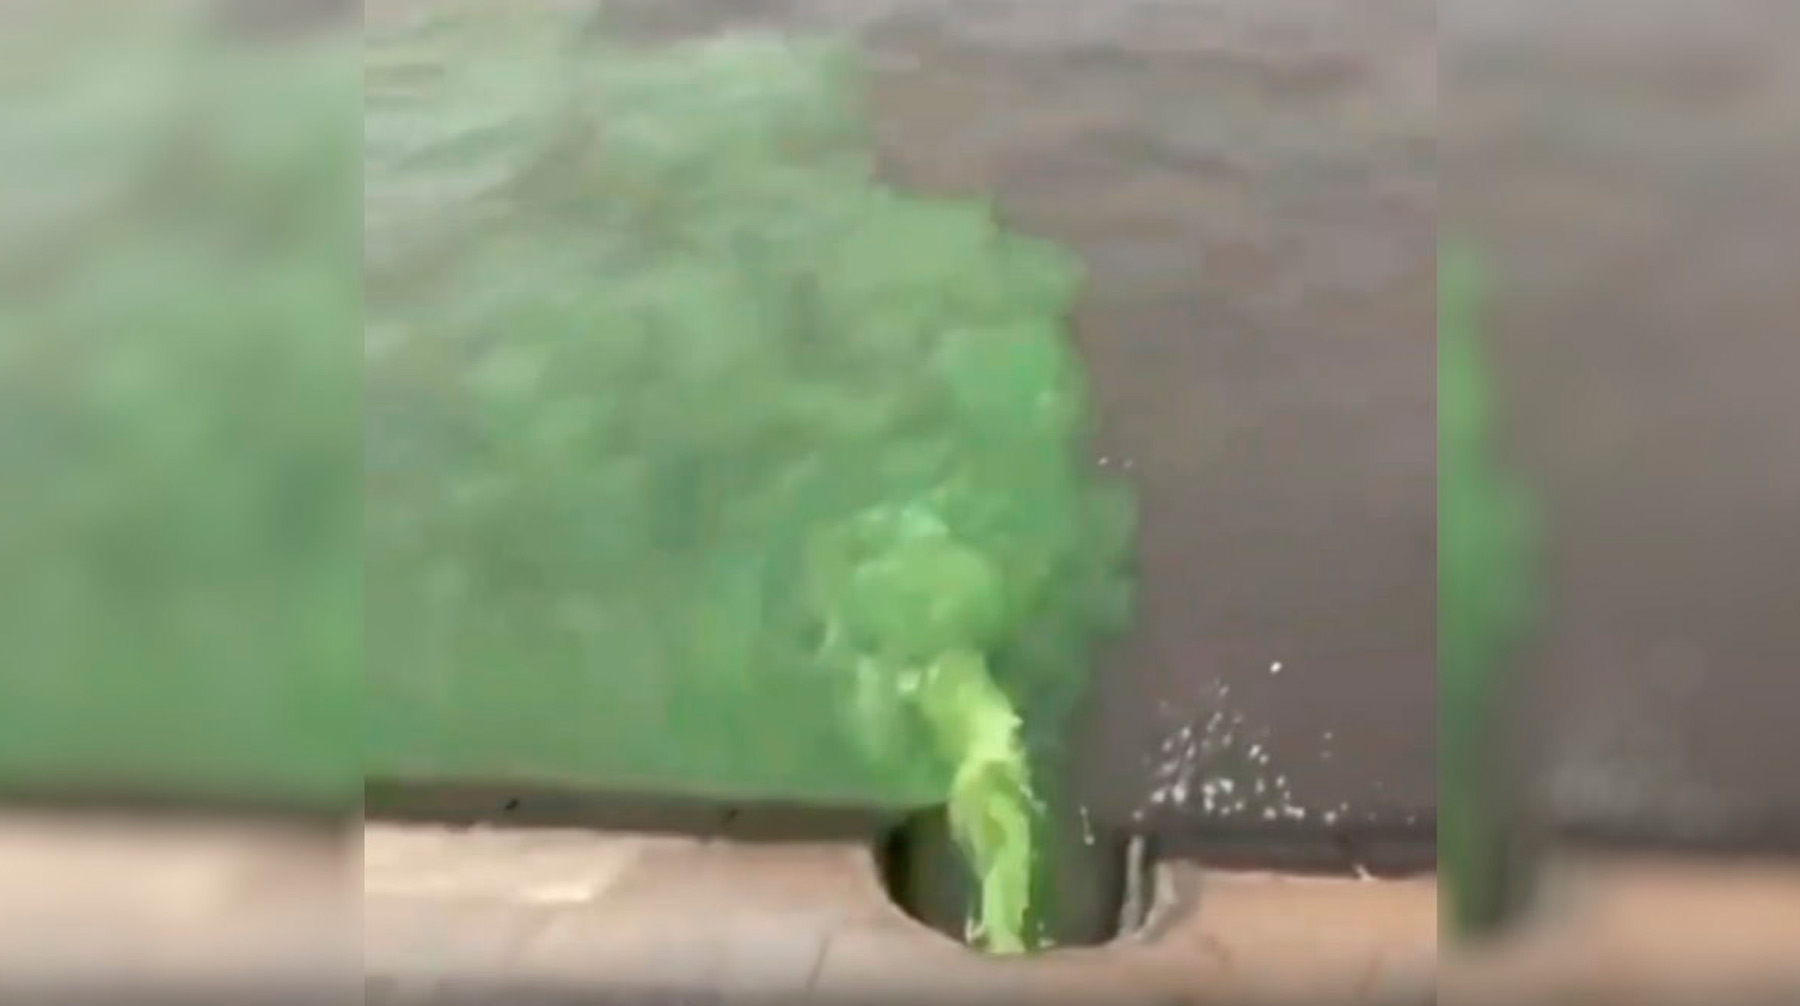 Цветная пена покрыла около двух километров поверхности воды Фото: © кадр из видео